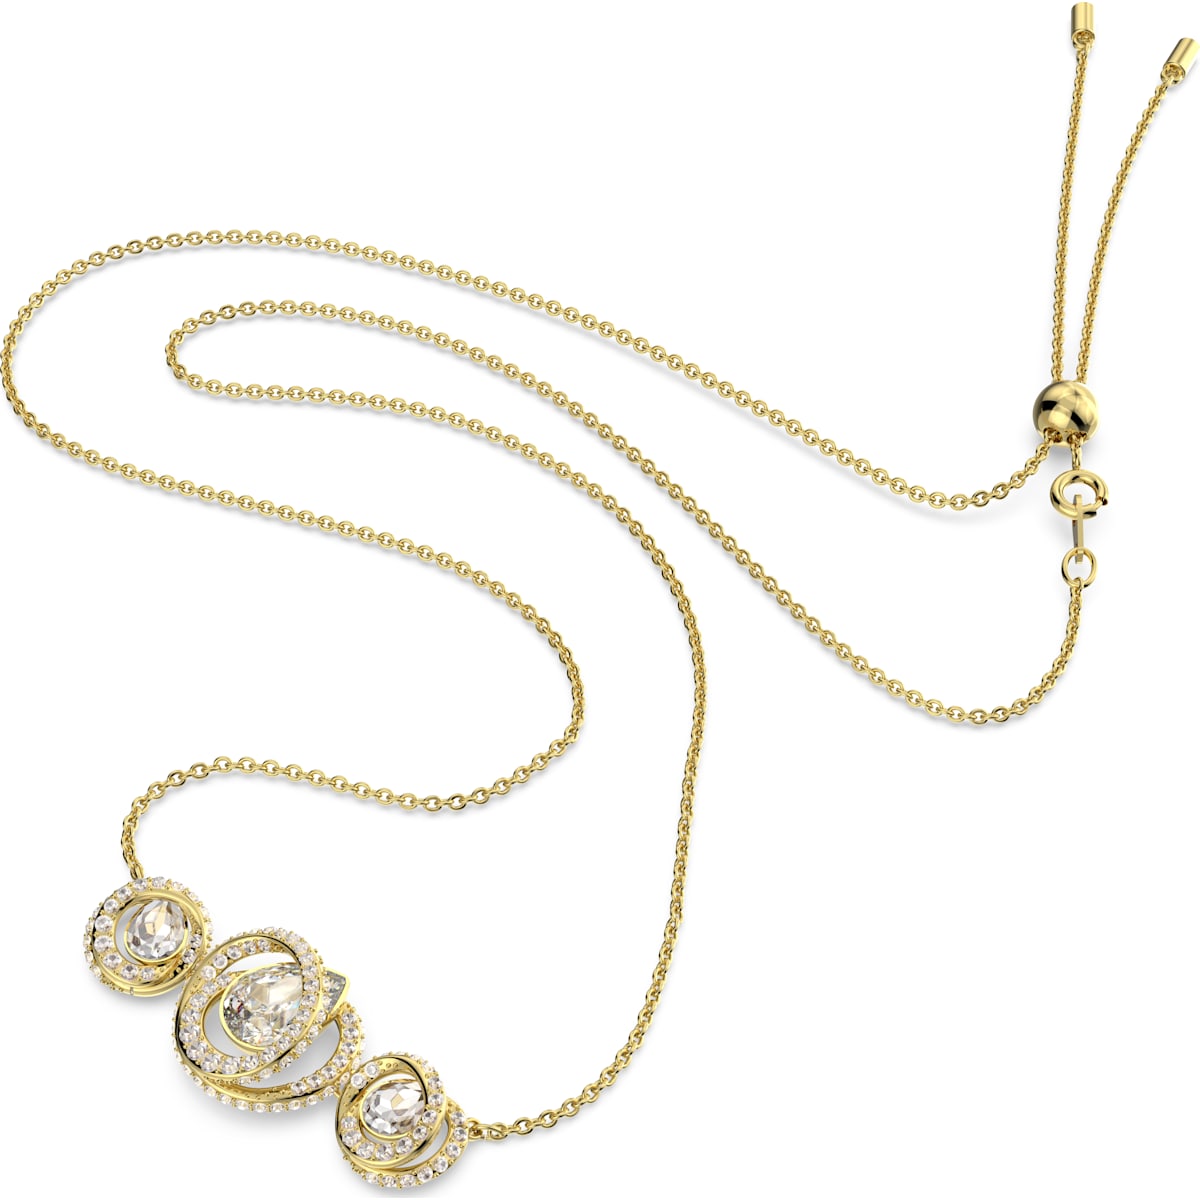 Swarovski - Generation Halskette Weiß, Goldlegierungsschicht - CRYSTAL UNTERBERGER